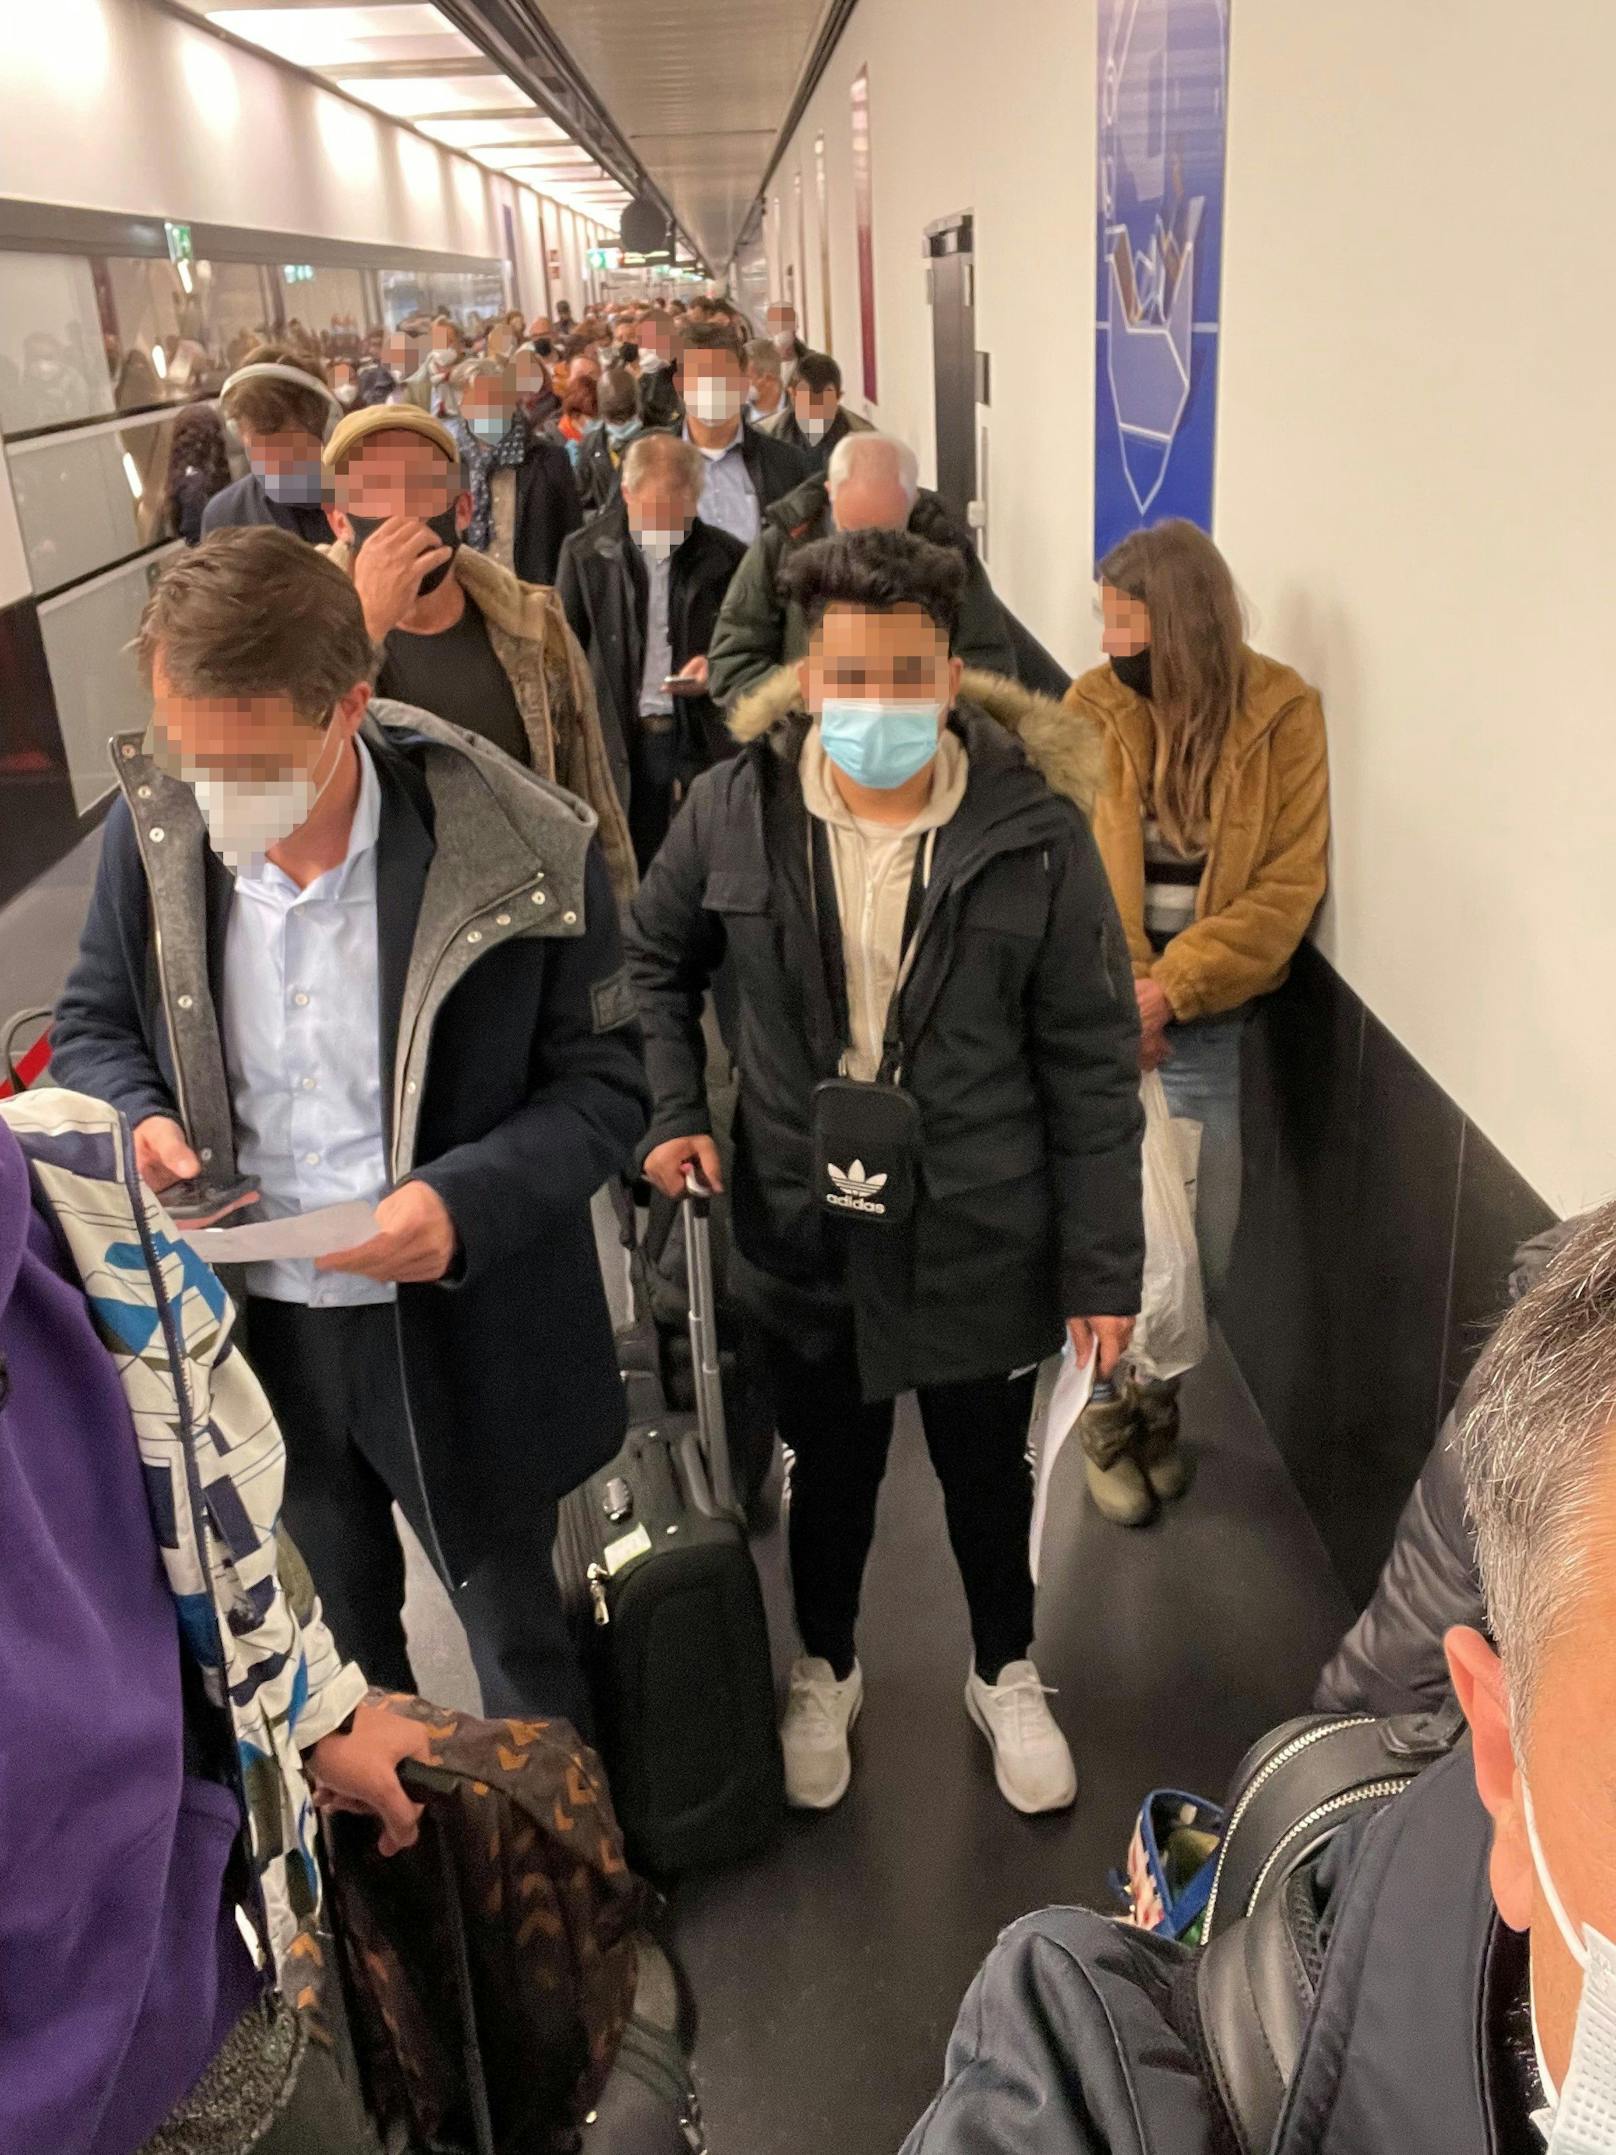 Am Flughafen Wien kam es zu einer Massenansammlung.